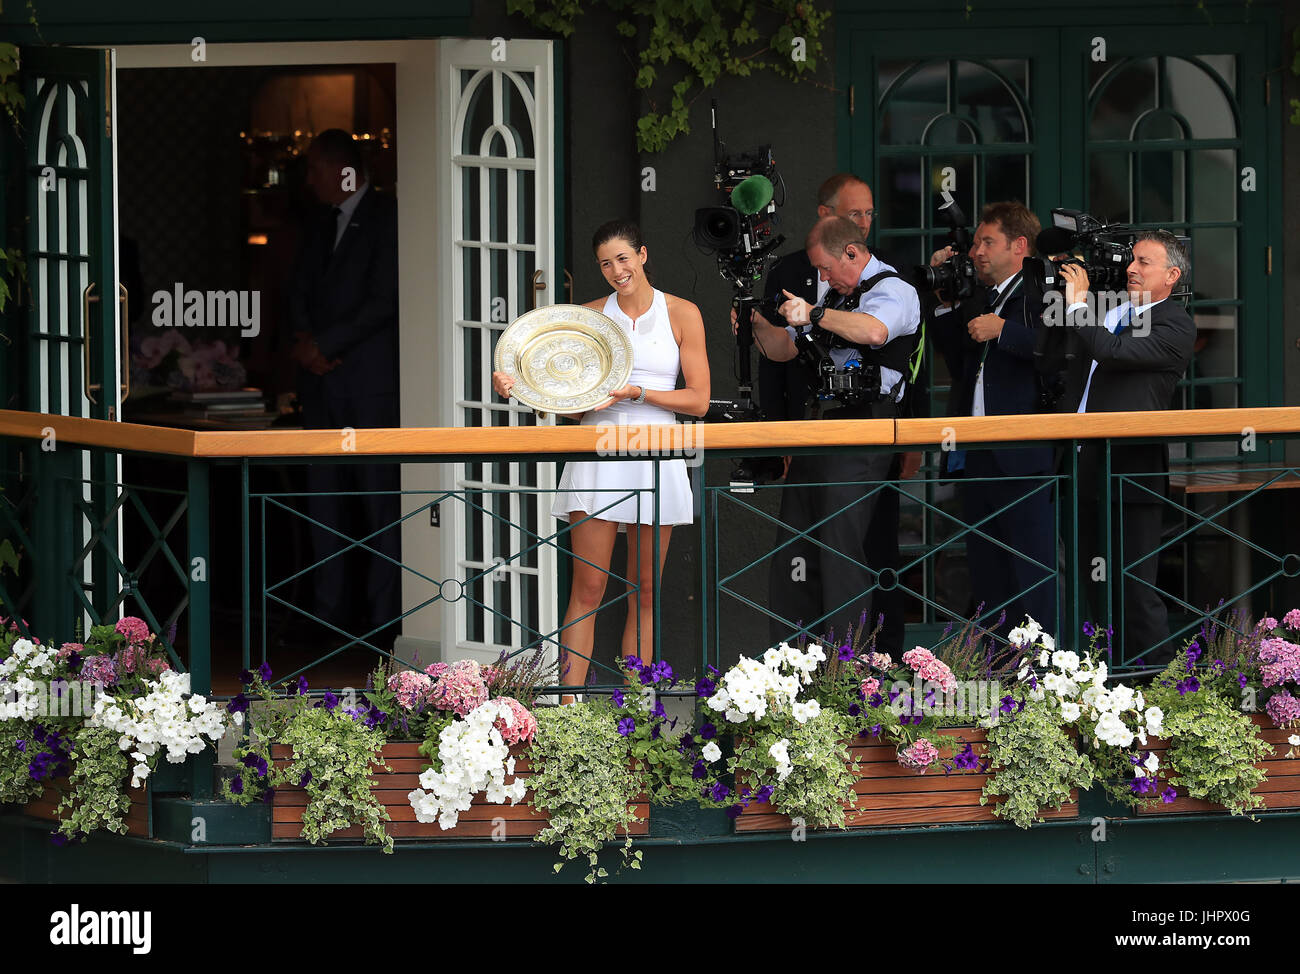 Garbine Muguruza celebra al derrotar a su hermana Venus Williams 7-5 6-0 para ganar el título de Wimbledon en singles femeninos el día doce de los campeonatos de Wimbledon en el All England Lawn Tennis y Croquet Club, el Torneo de Tenis de Wimbledon. Foto de stock